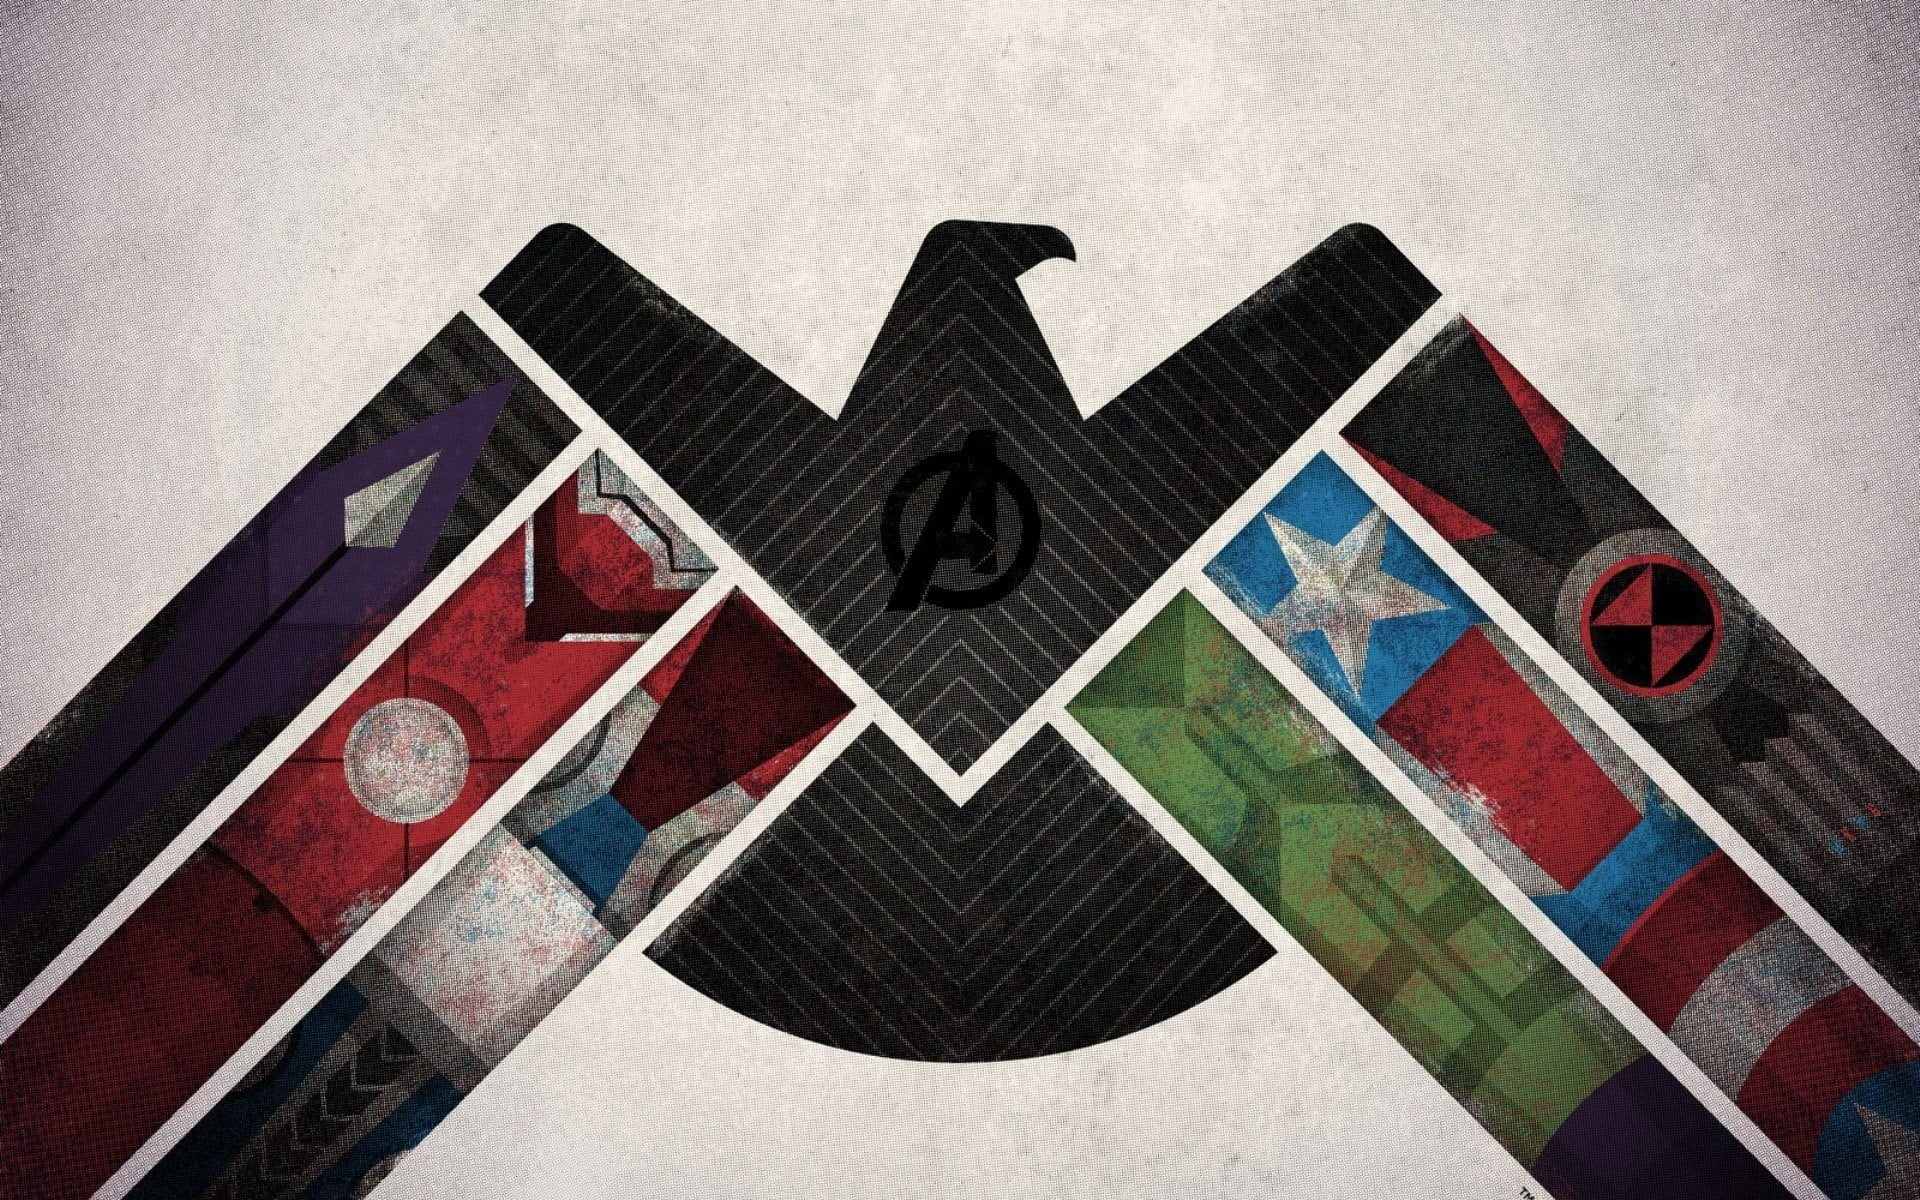 Marvel Avengers digital wallpaper, Iron Man, Thor, Captain America